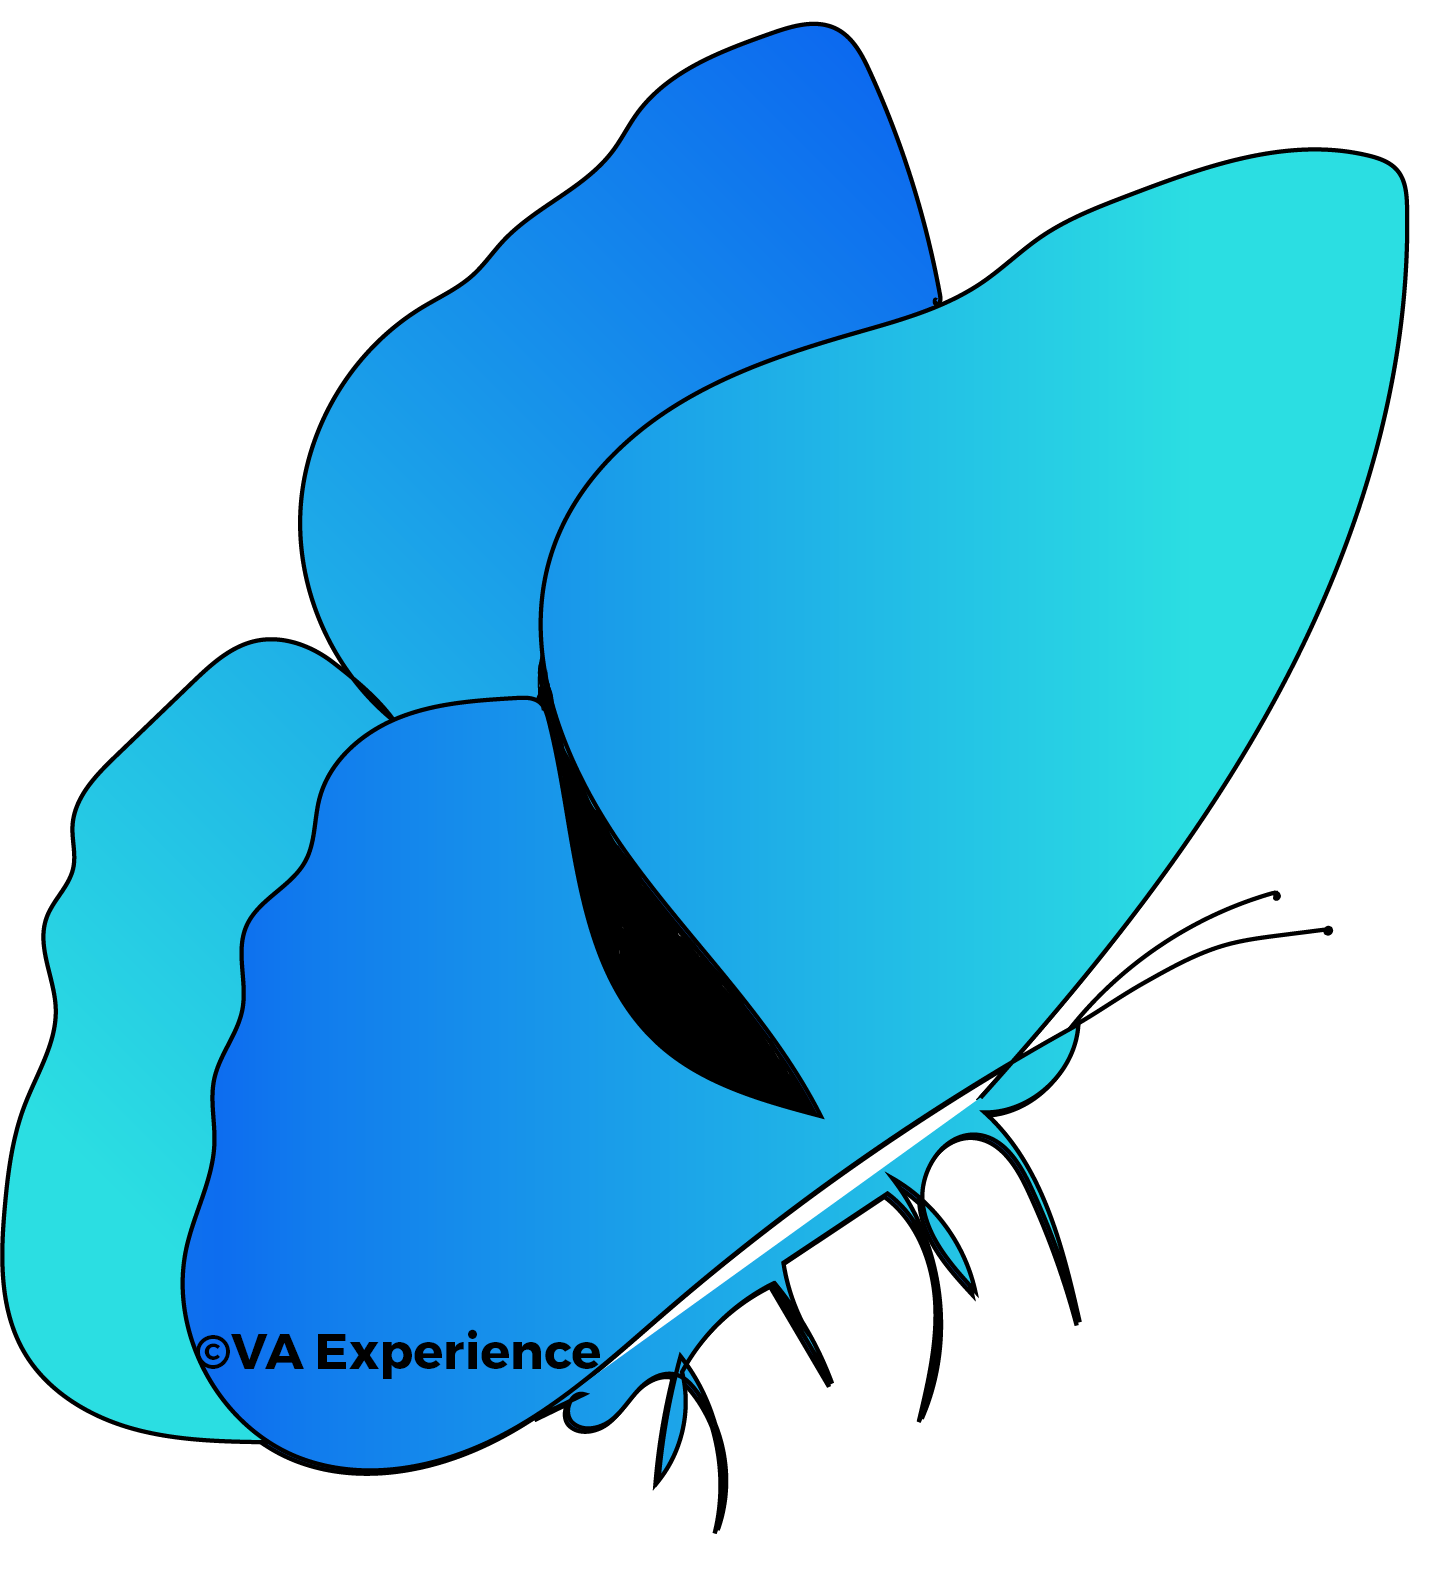 vlinder-gradient-grafisch-ontwerp-blauw-groen-va-experience